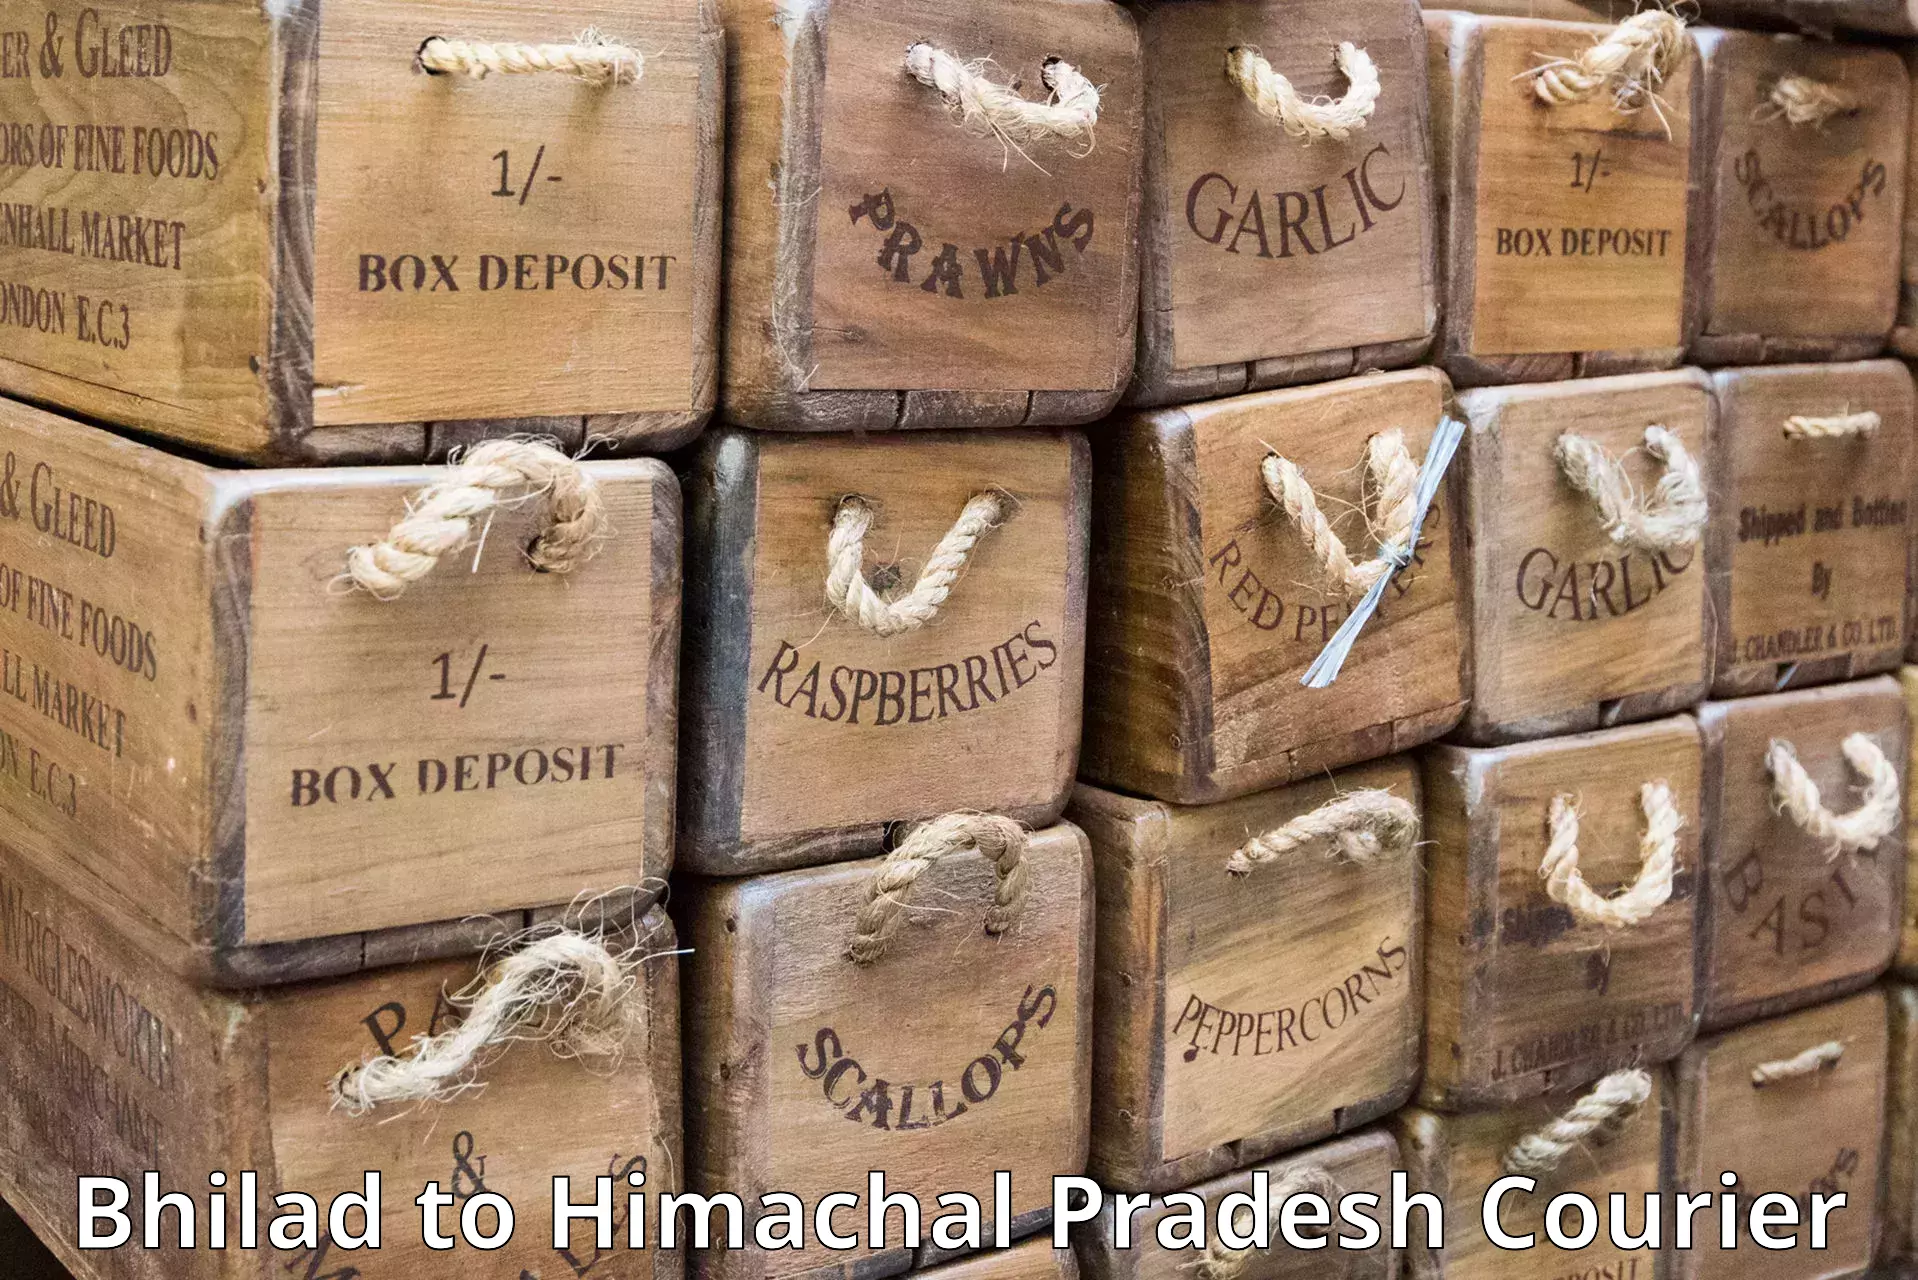 Comprehensive parcel tracking Bhilad to Himachal Pradesh